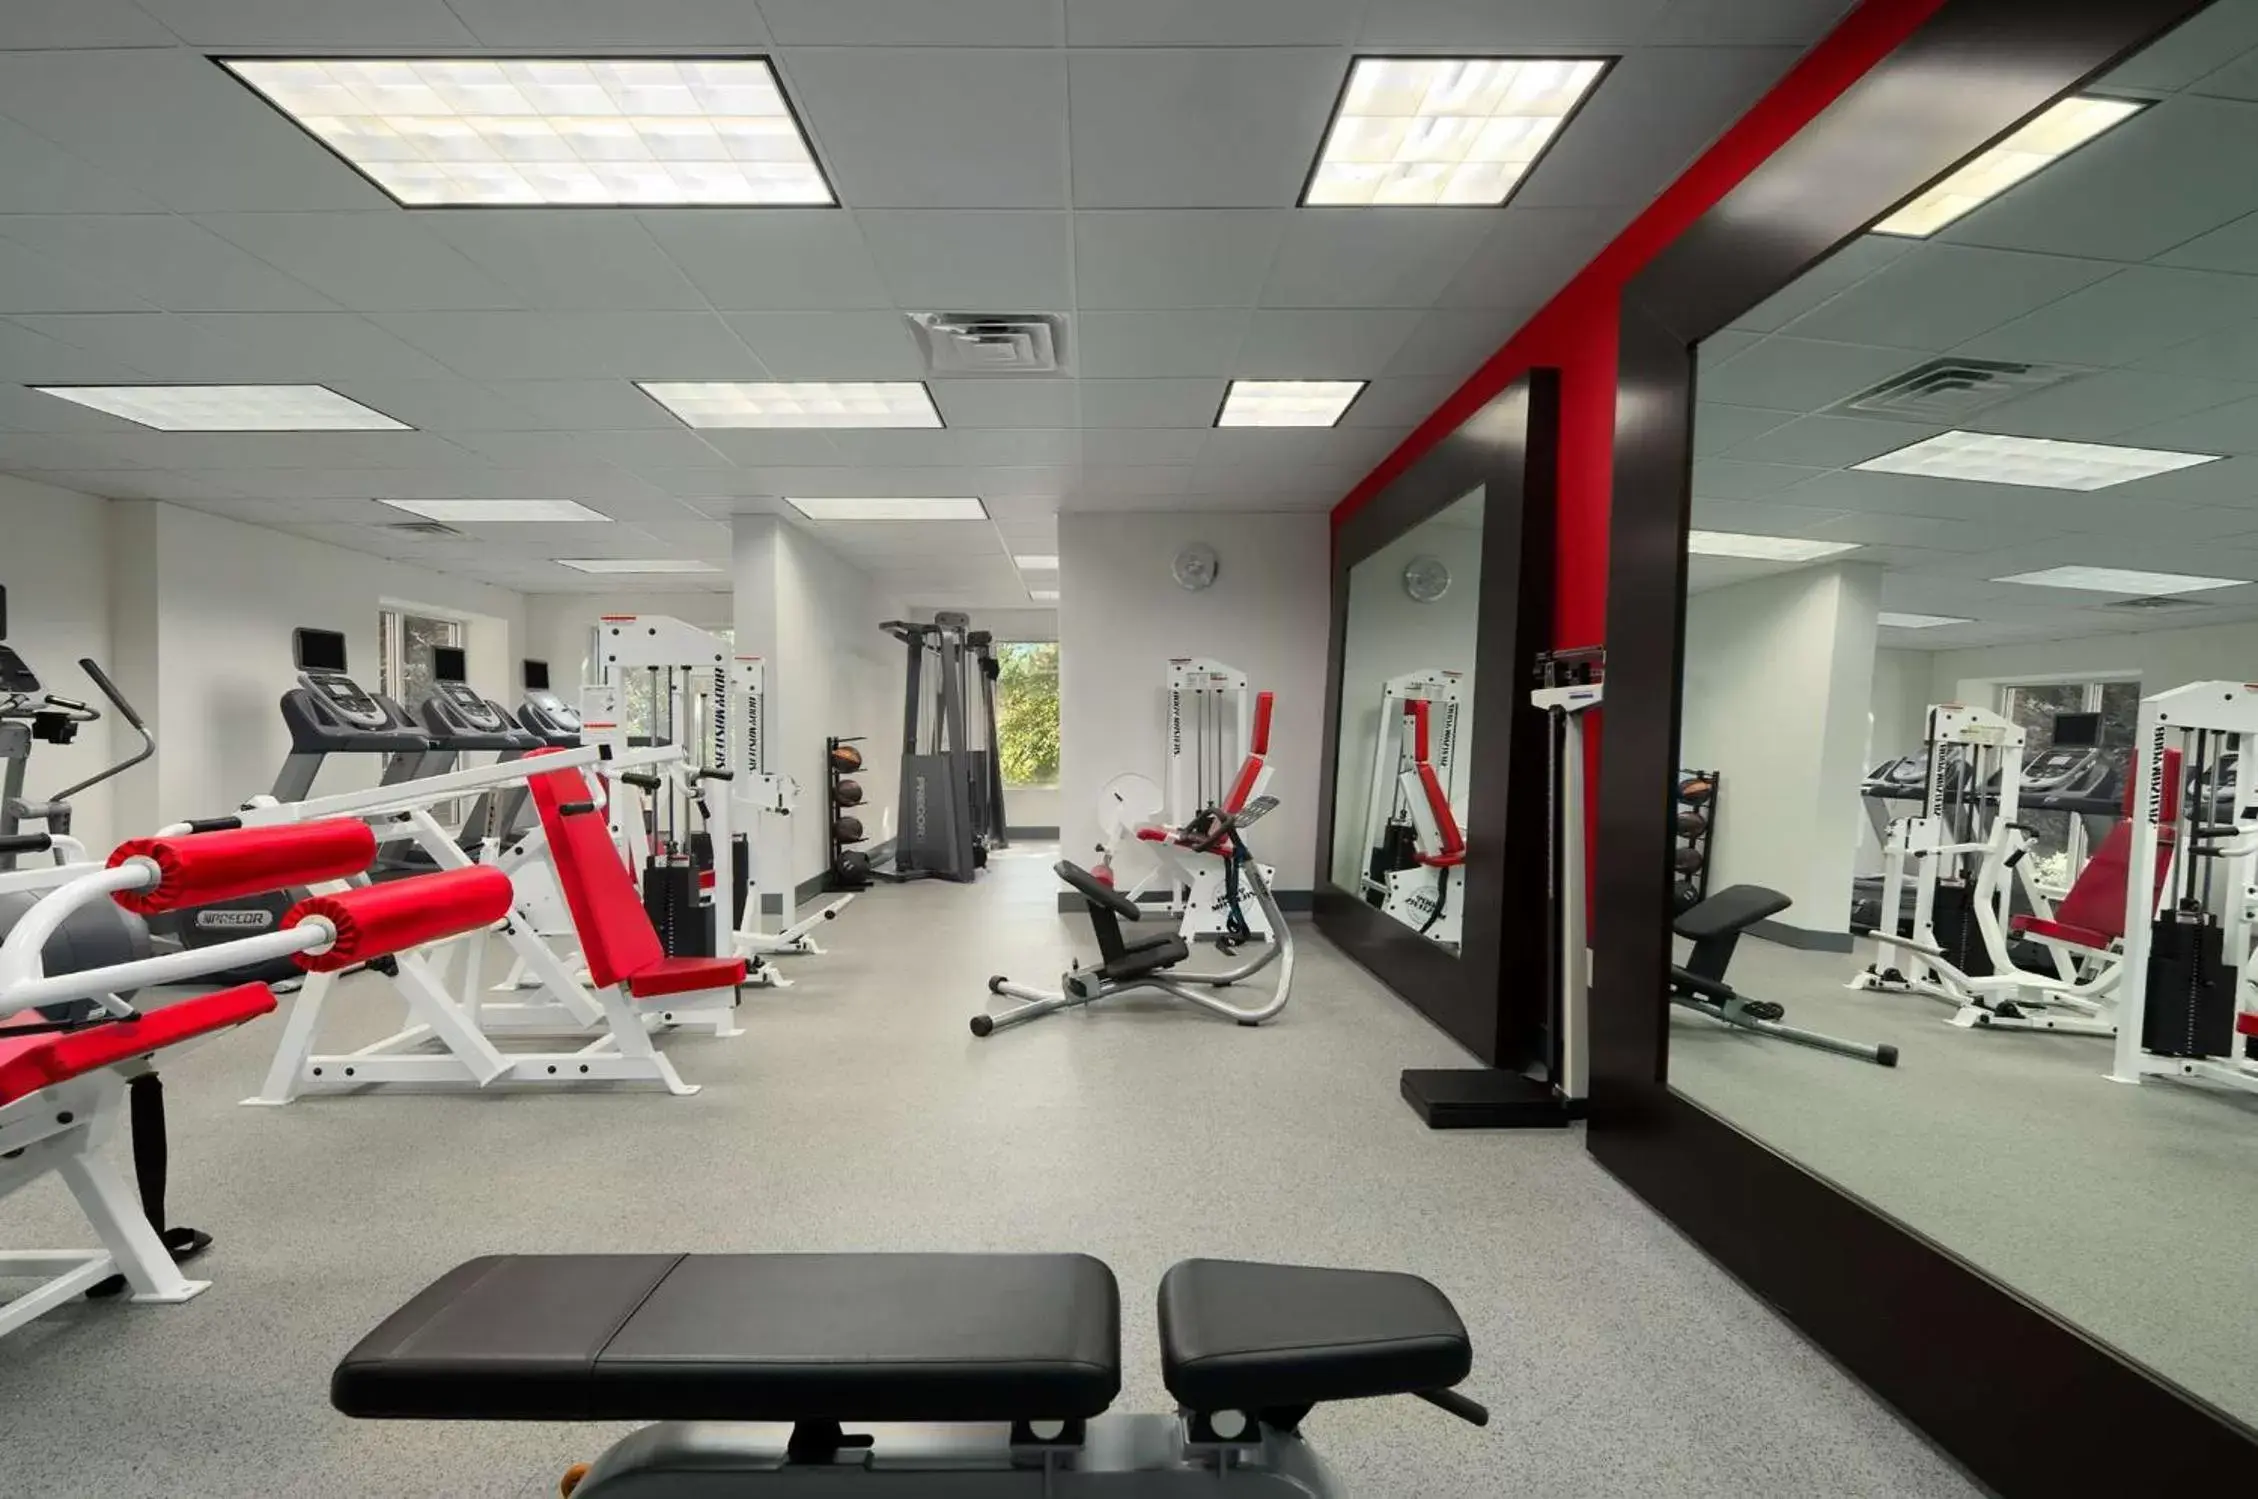 Fitness centre/facilities, Fitness Center/Facilities in Hilton Garden Inn Atlanta North/Johns Creek